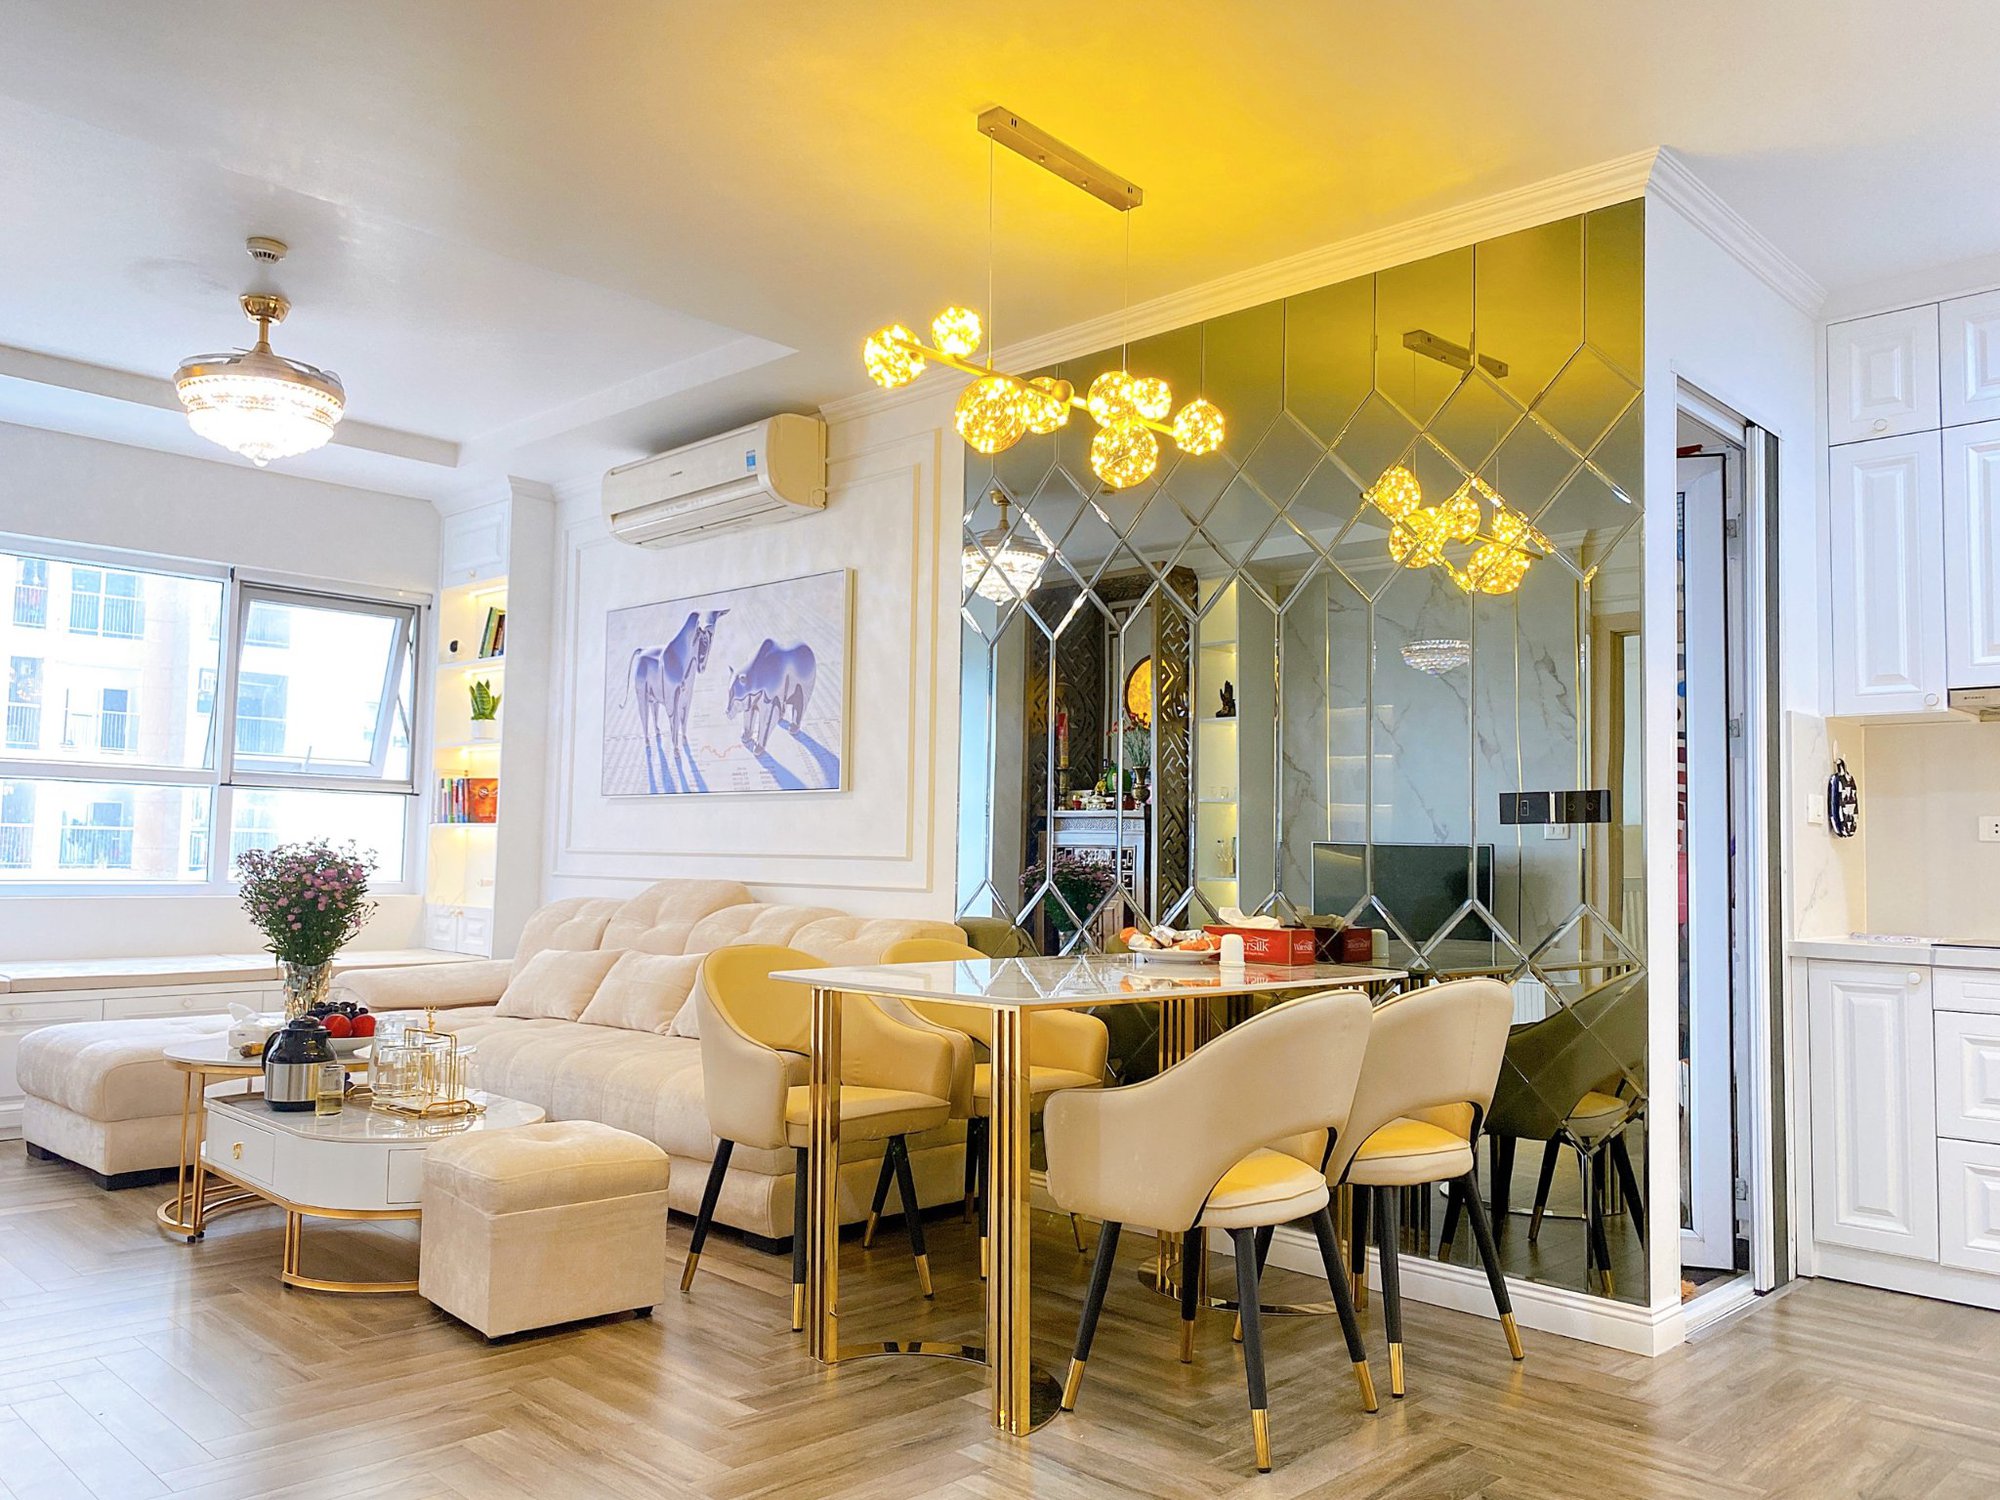 Cặp vợ chồng trẻ Hà Nội thay đổi căn hộ 85m² thành tổ ấm mới rộng thoáng theo gam màu trắng  - Ảnh 2.